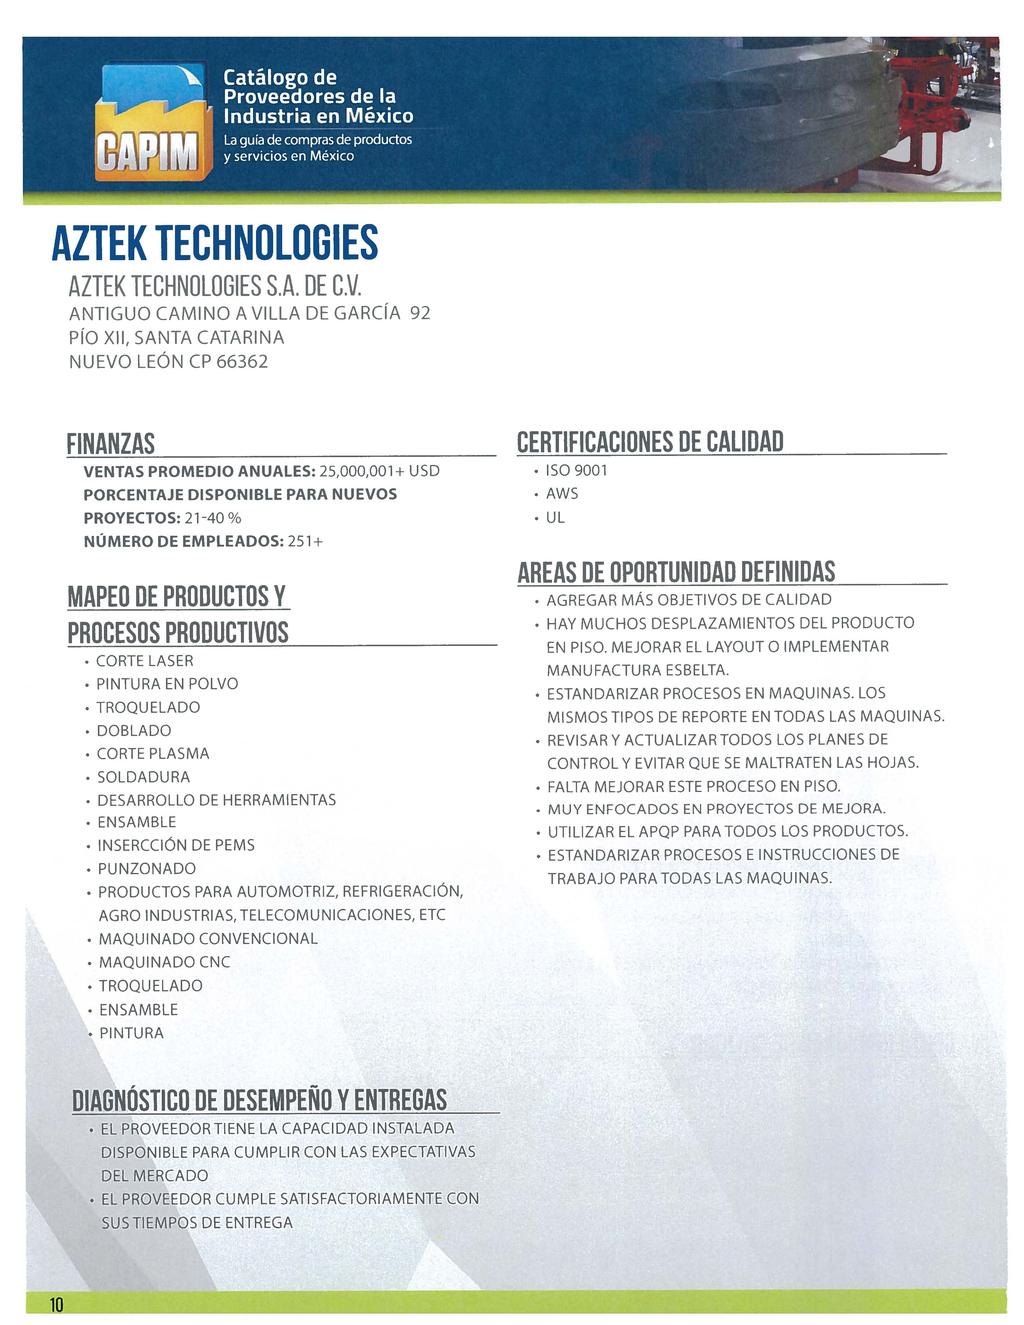 AZTEK TECHNOLOGIES AZTEK TECHNOLOGIES S.A. OE C.V.